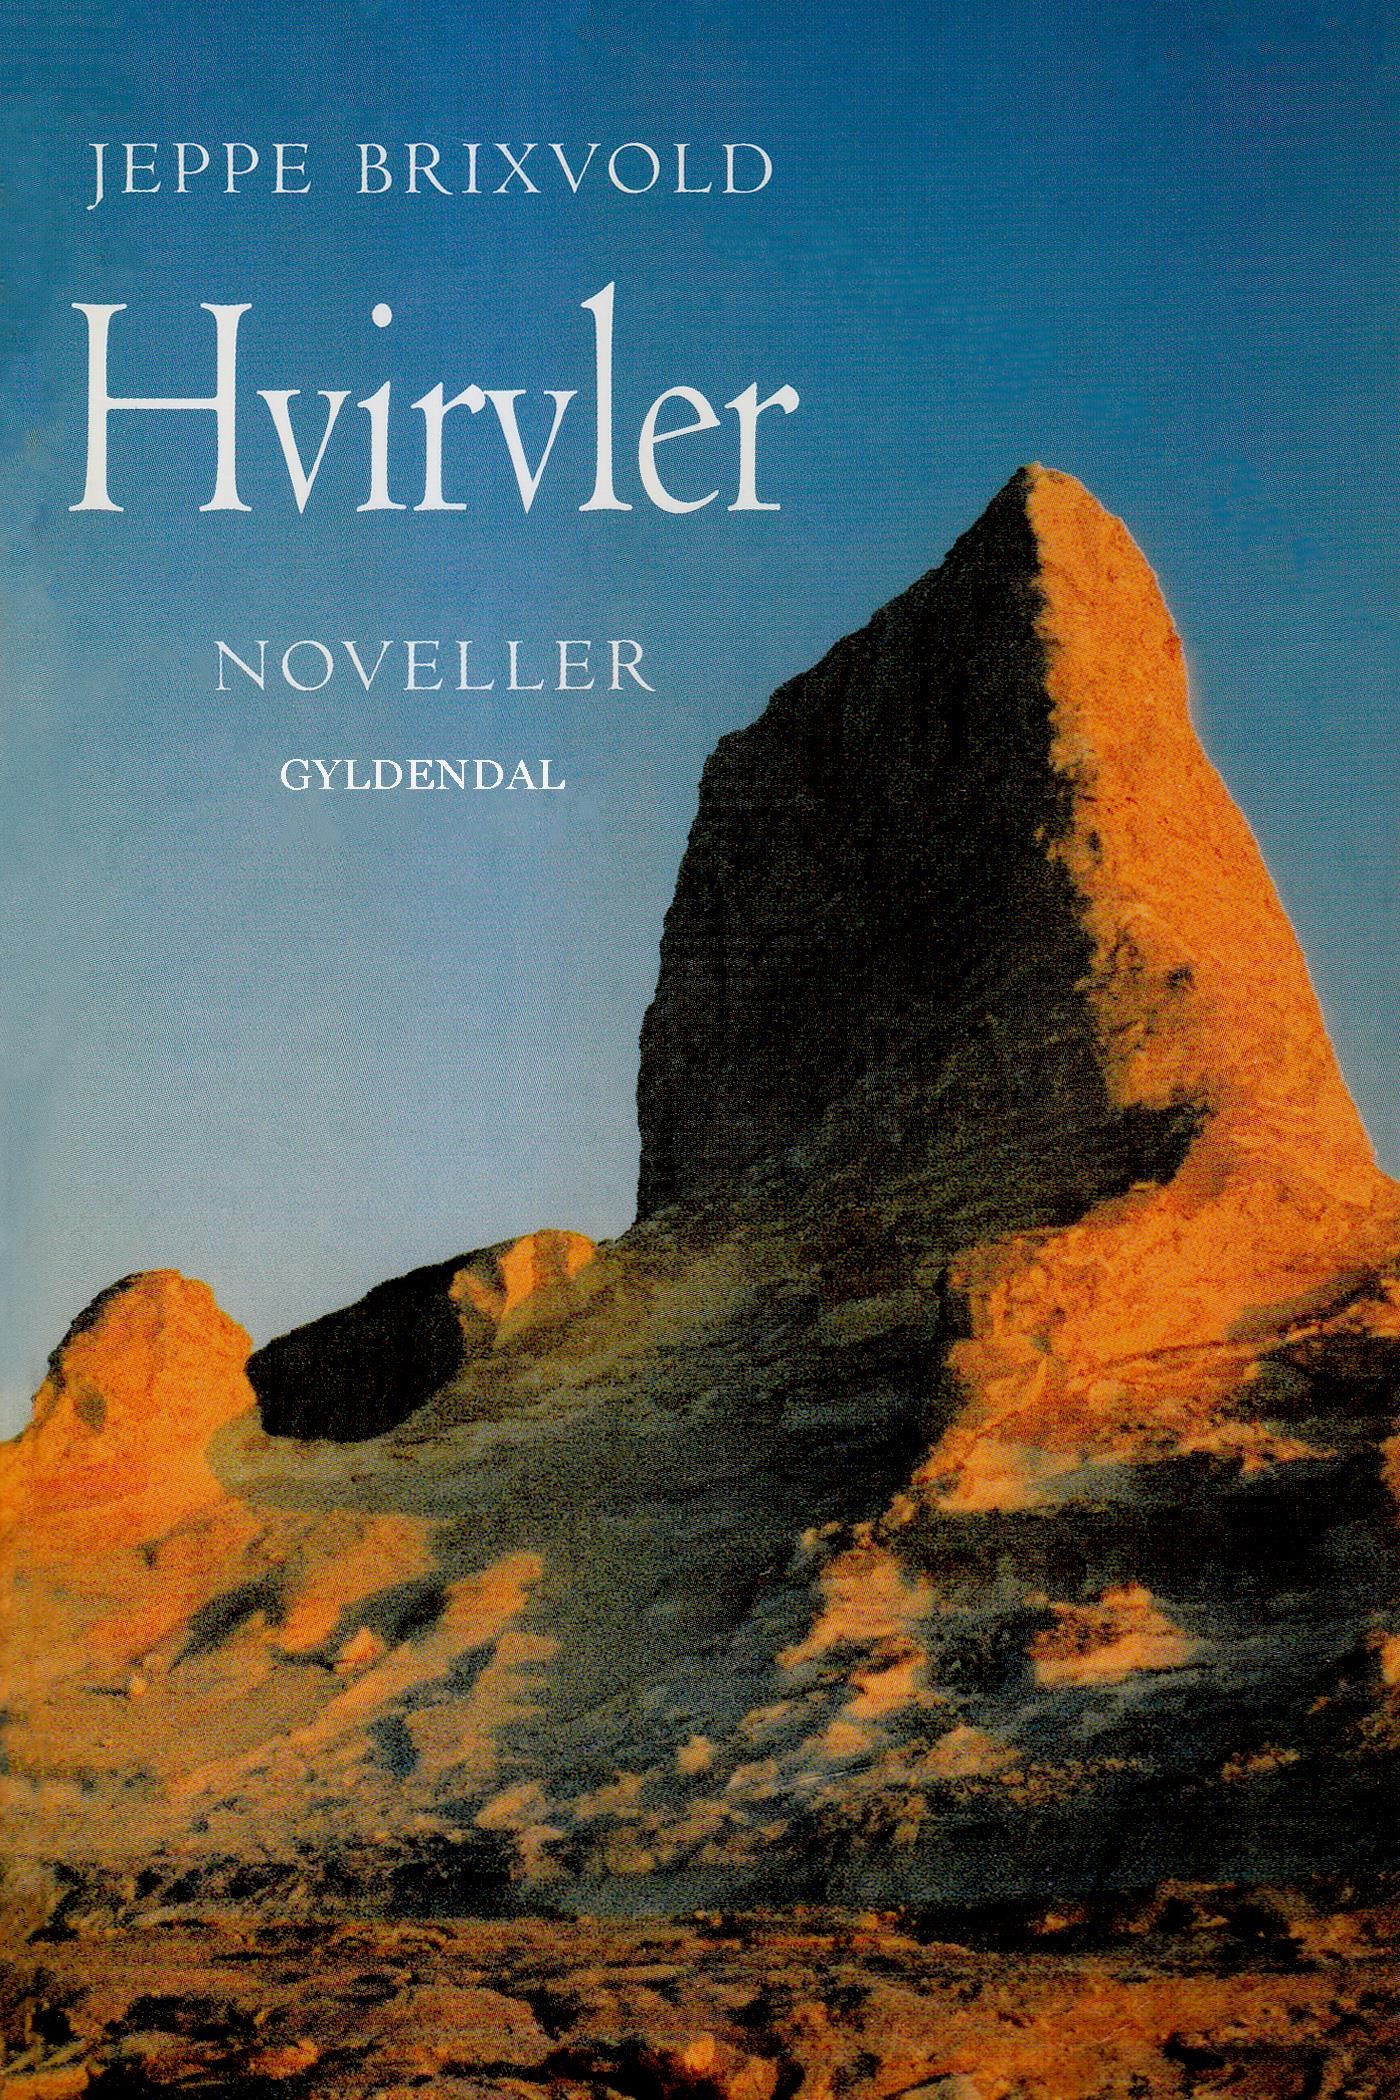 Hvirvler, eBook by Jeppe Brixvold